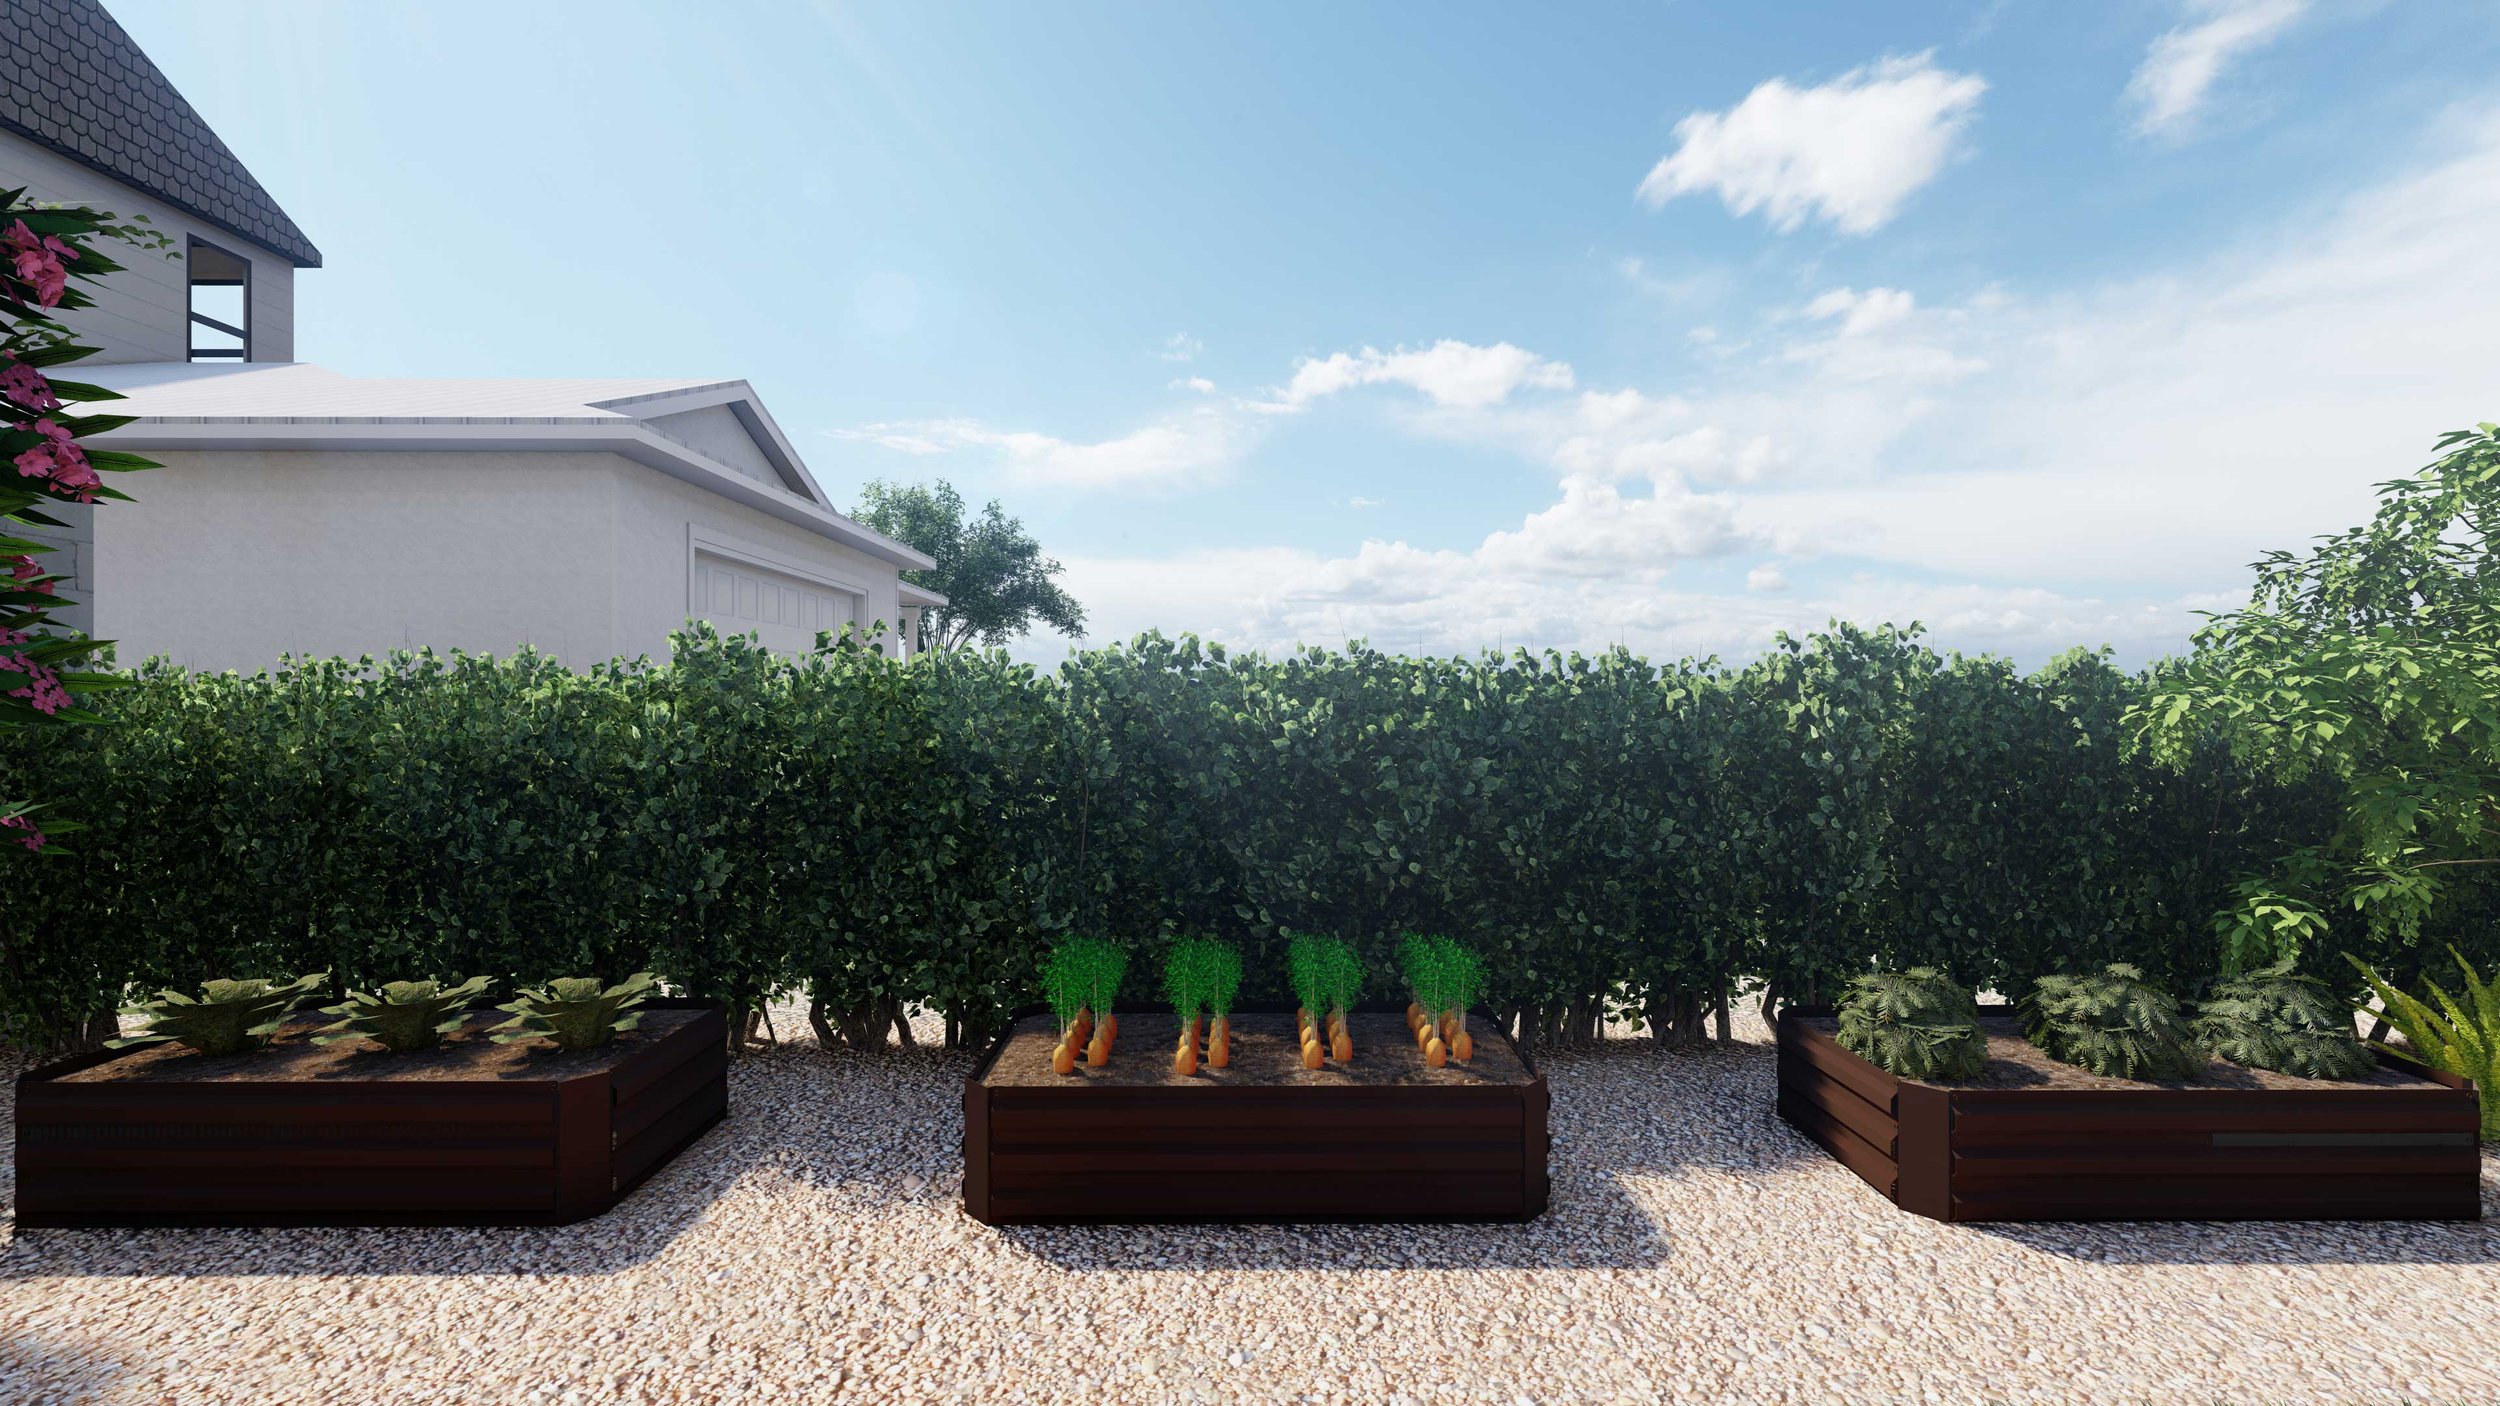 Edible pocket garden in a side yard landscape design